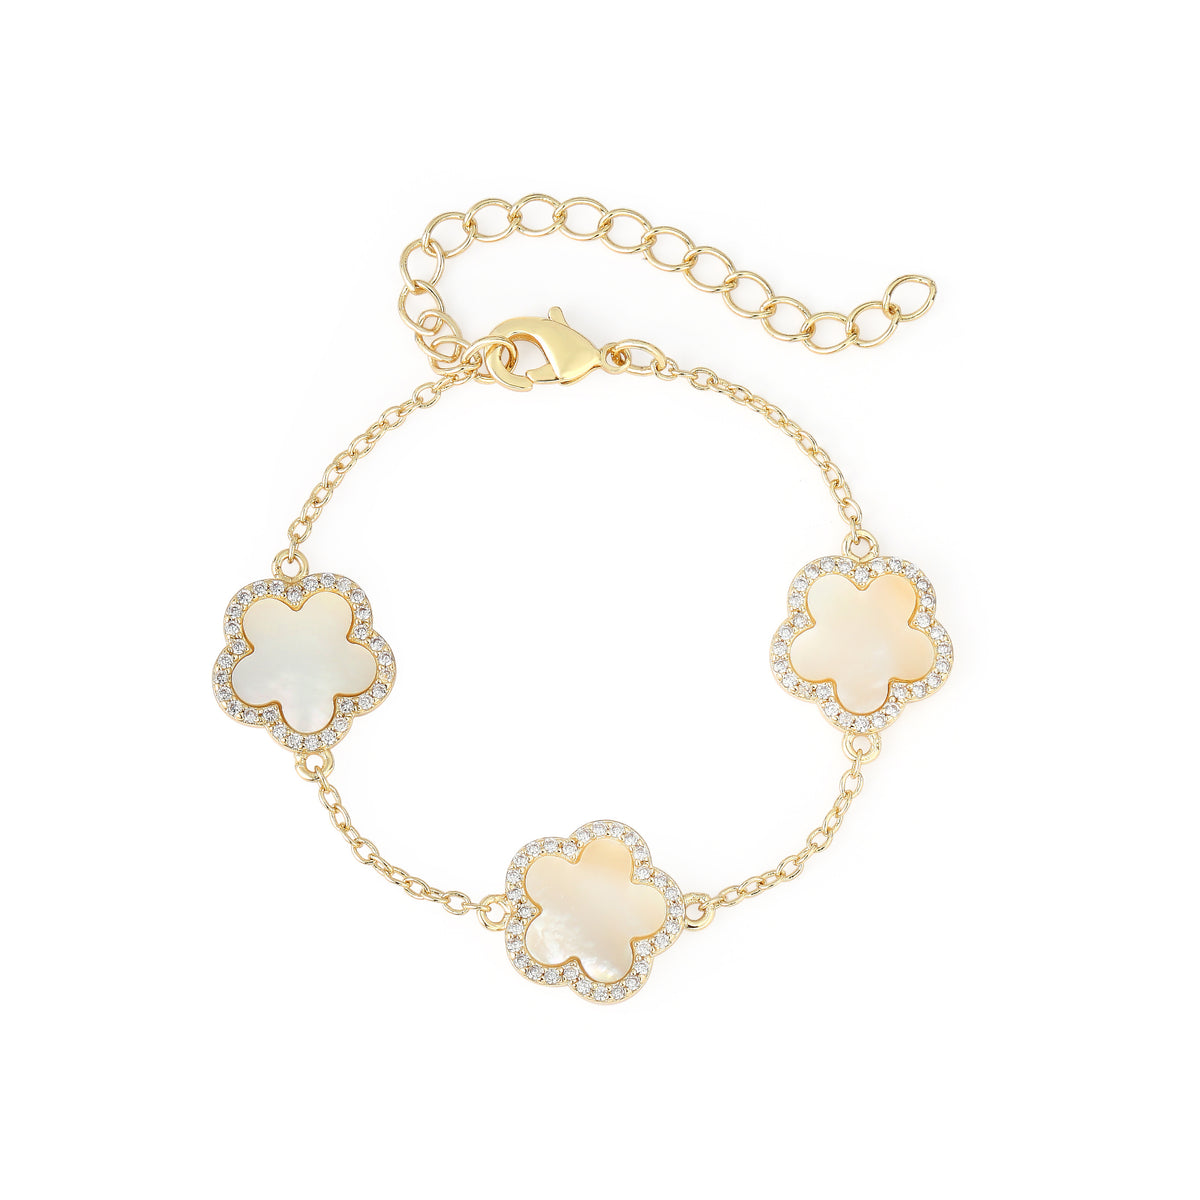 Triple flower mother of pearl bracelet